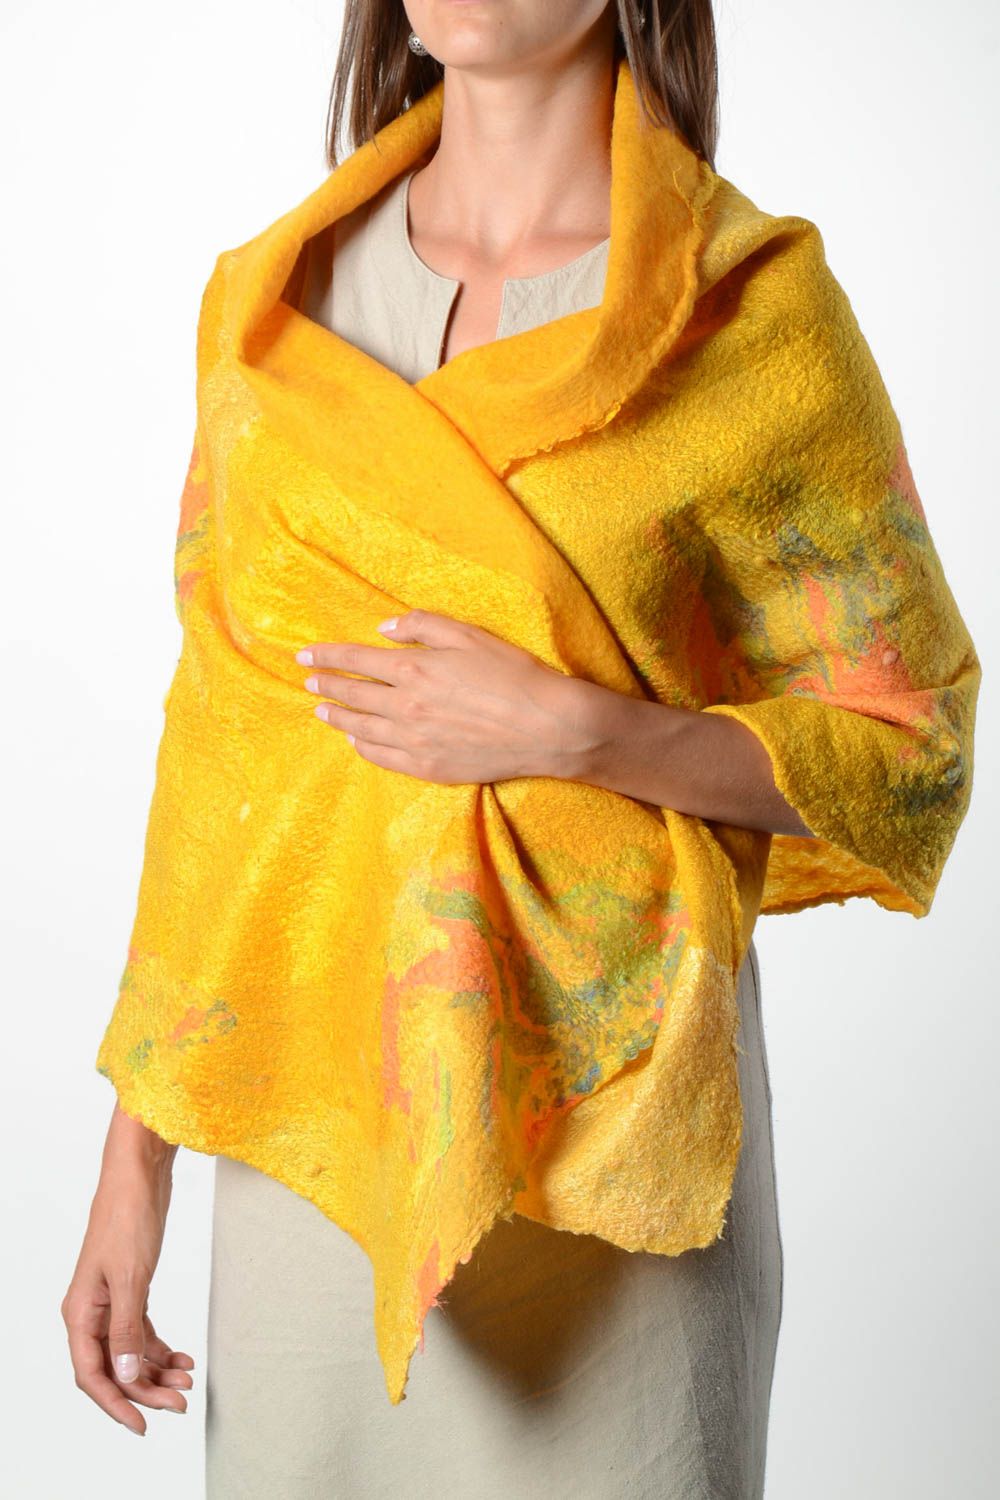 Женский шарф палантин ручной работы валяный палантин из шерсти желтый светлый фото 1